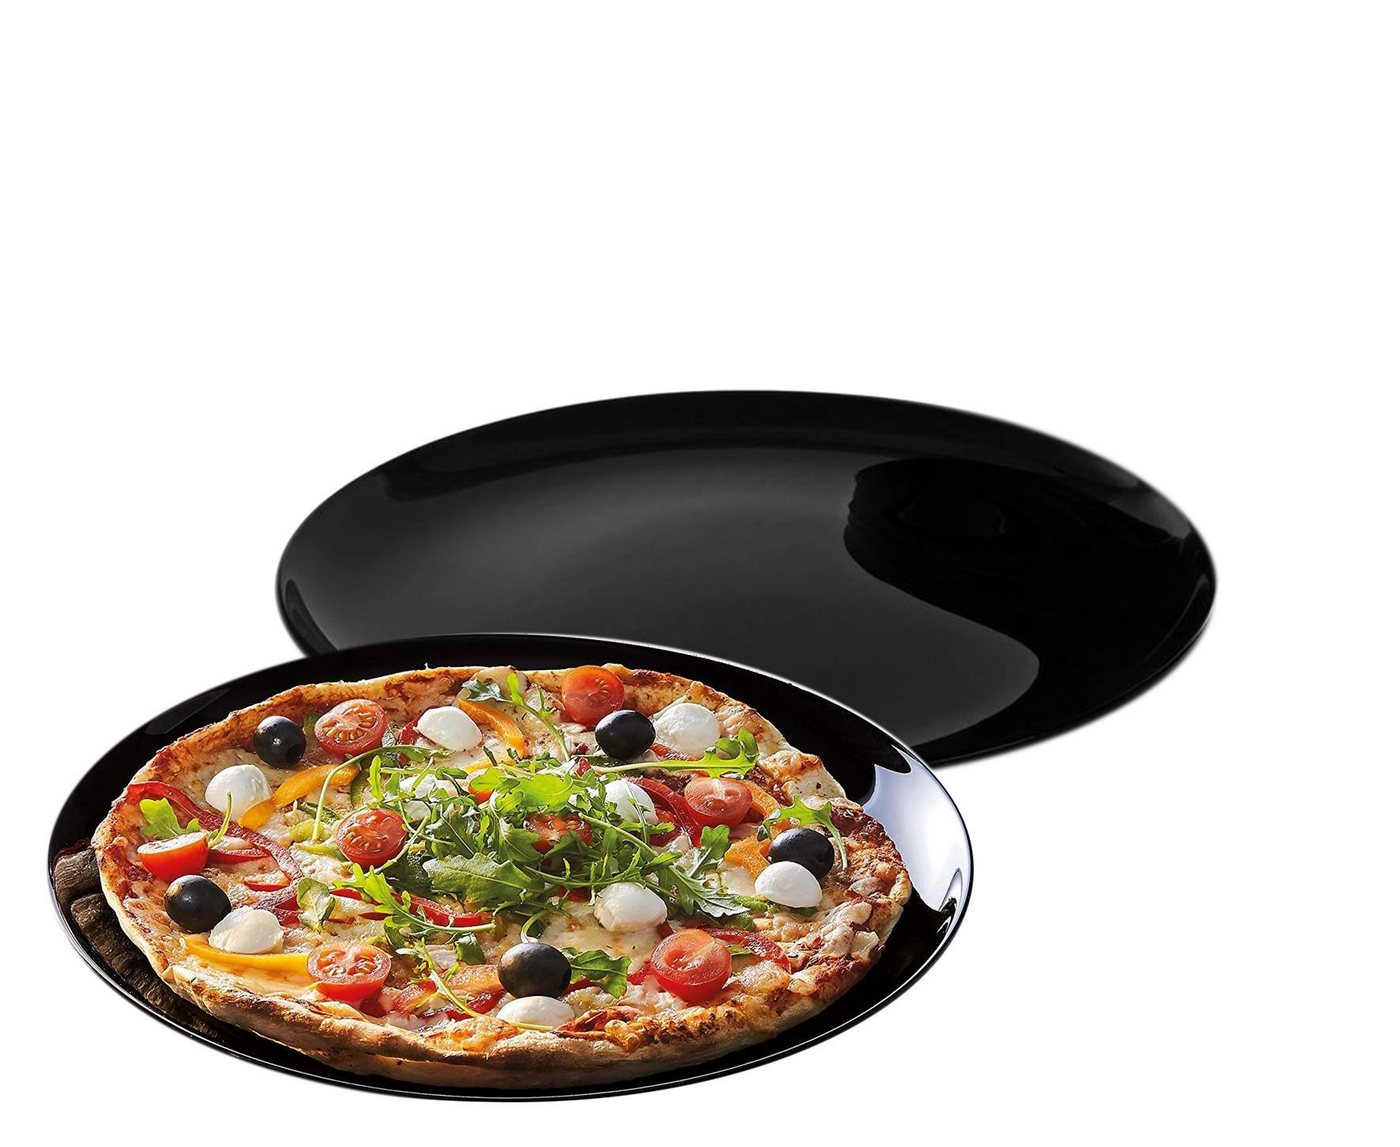 Arcoroc Pizzateller 2 Pizzateller / Grillteller 32cm Black Italian Style, hartglas von Arcoroc